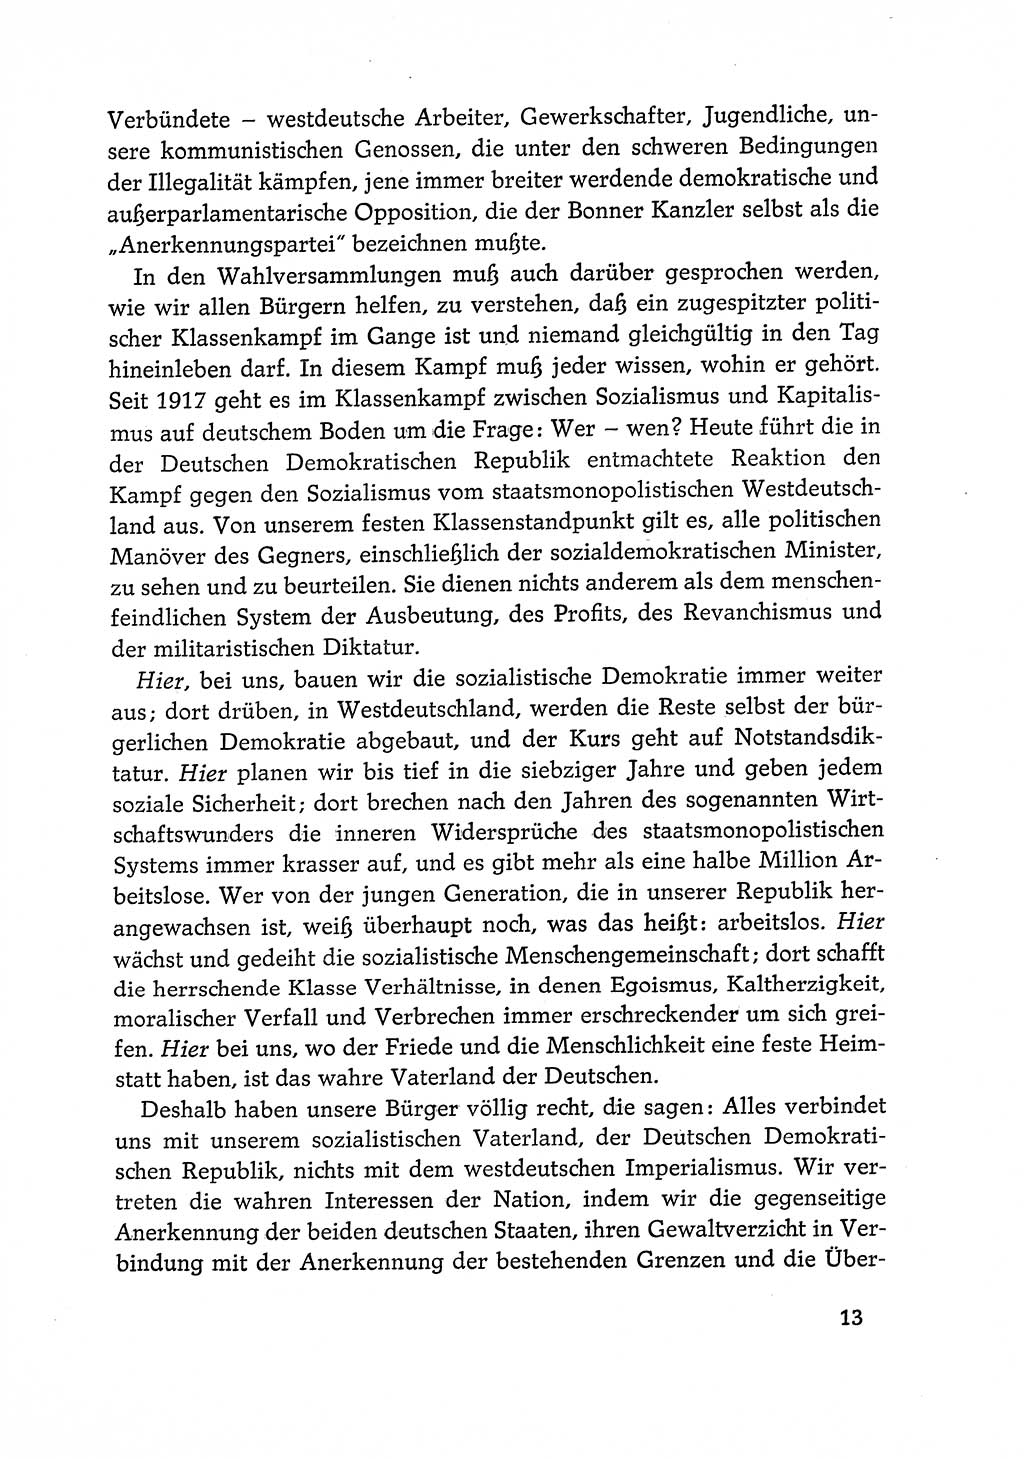 Dokumente der Sozialistischen Einheitspartei Deutschlands (SED) [Deutsche Demokratische Republik (DDR)] 1968-1969, Seite 13 (Dok. SED DDR 1968-1969, S. 13)